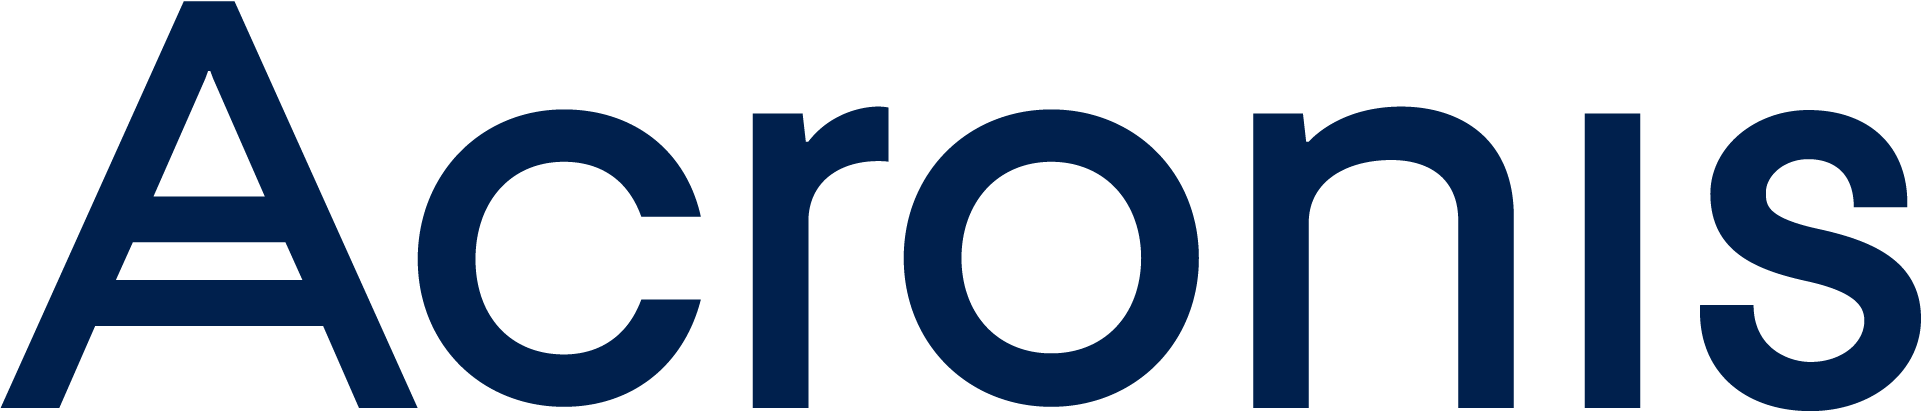 acronis-logo-large-2